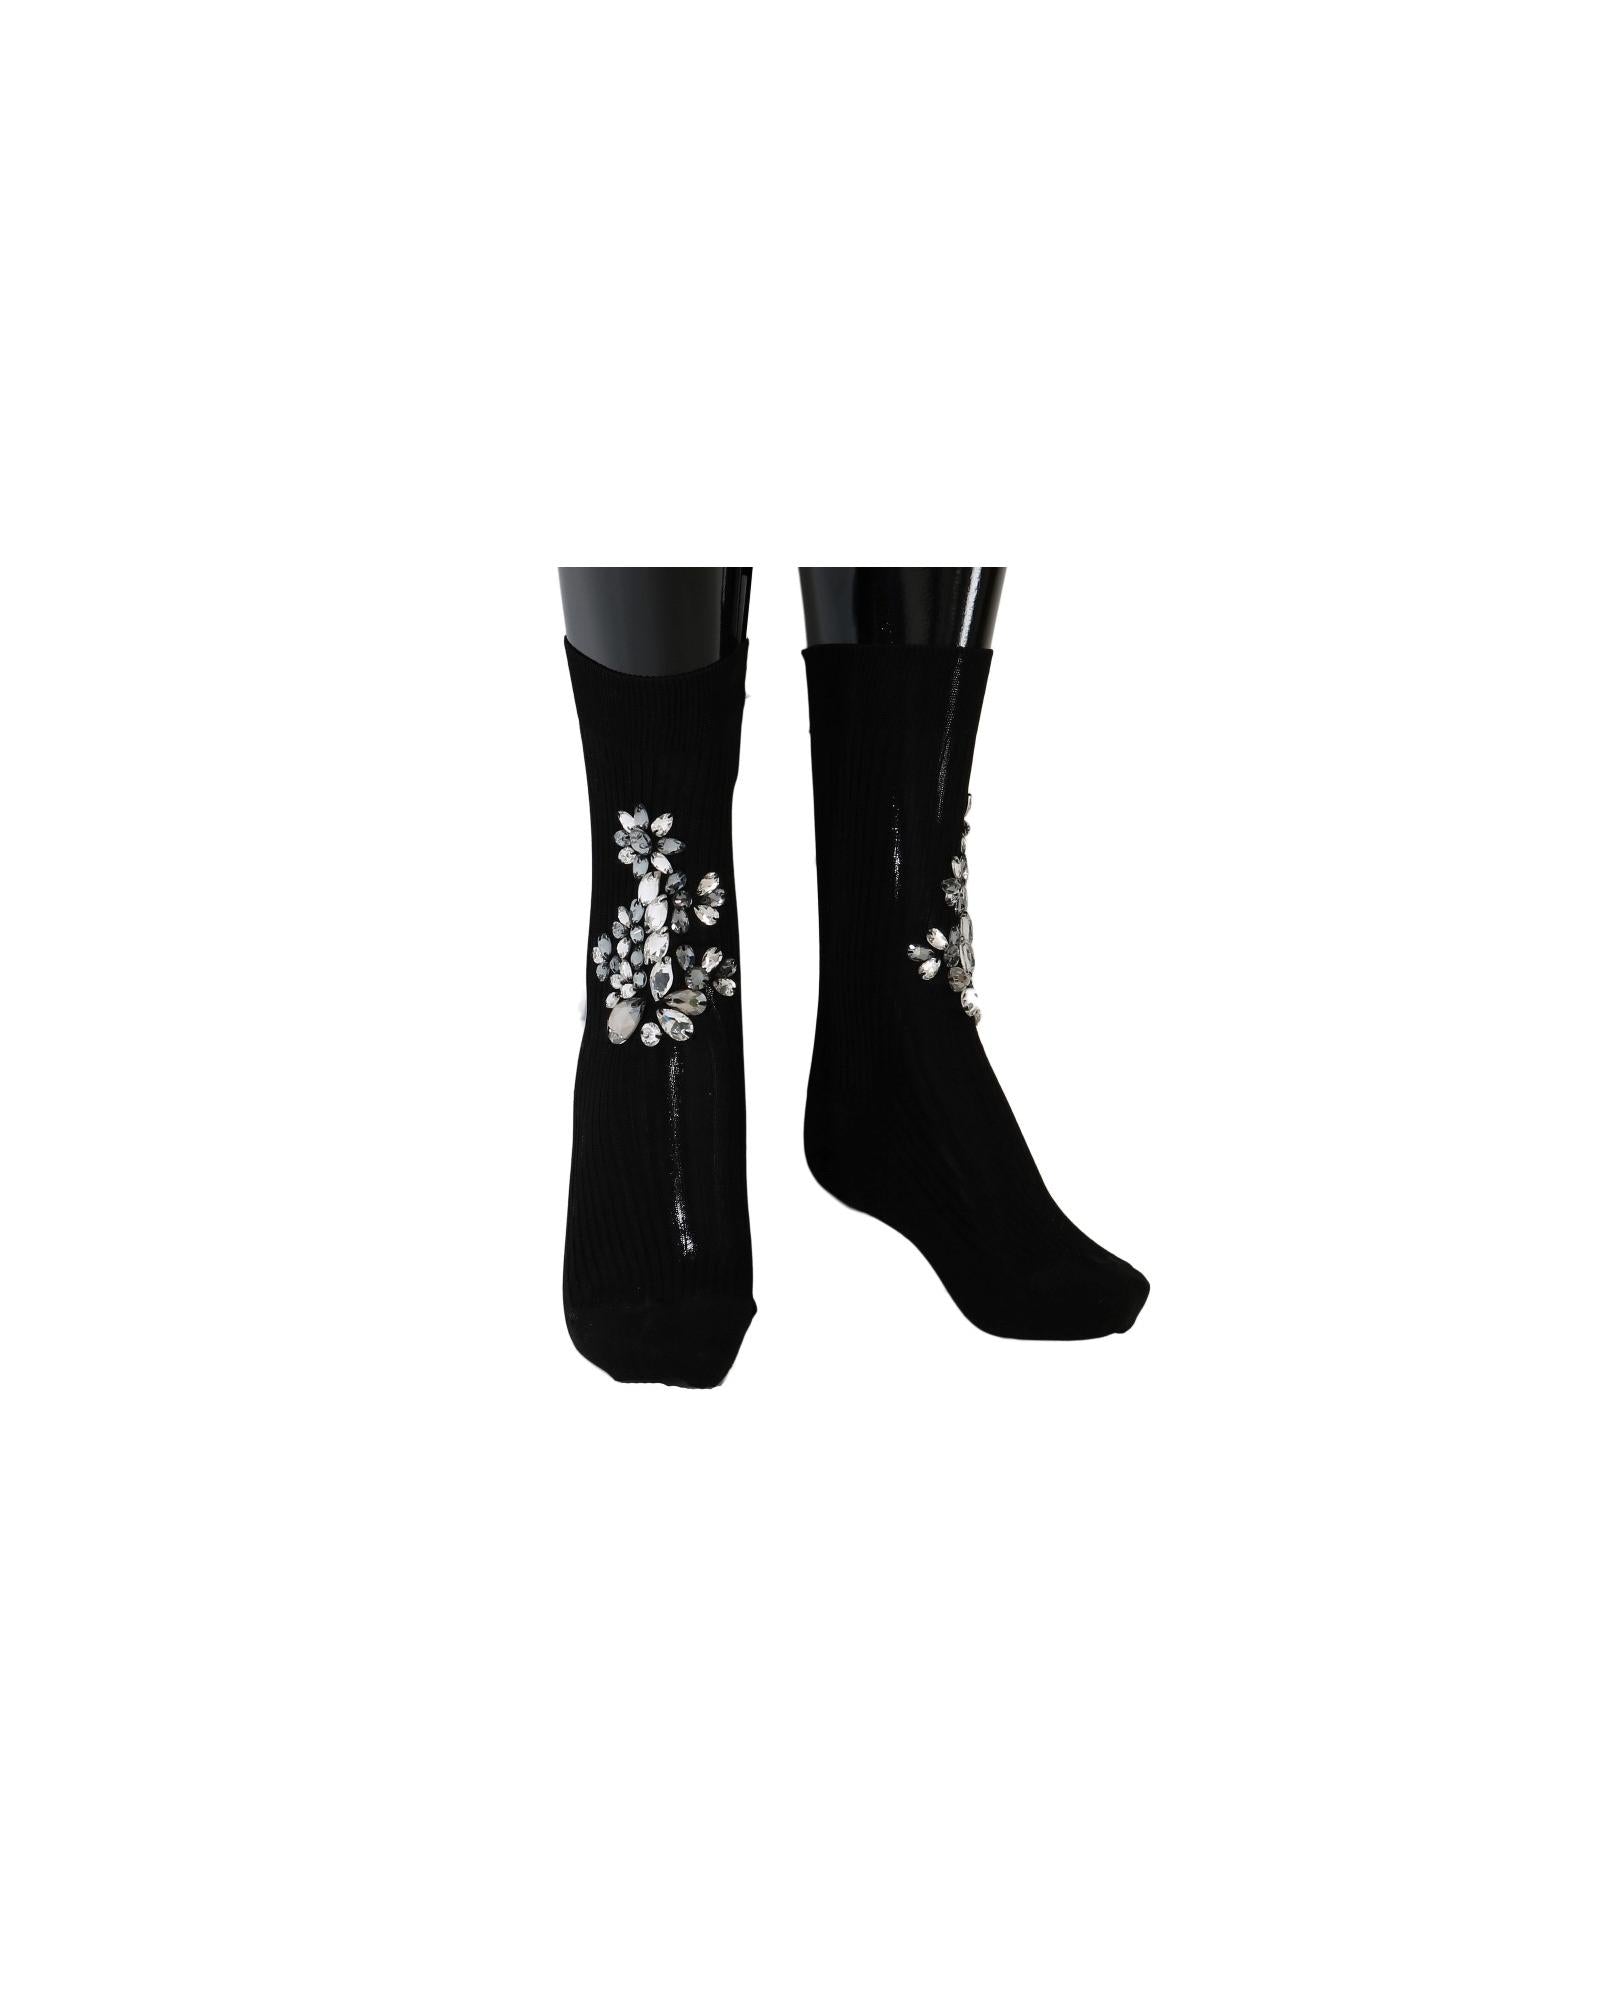 Floral Crystal Embellished Stockings Socks S Women